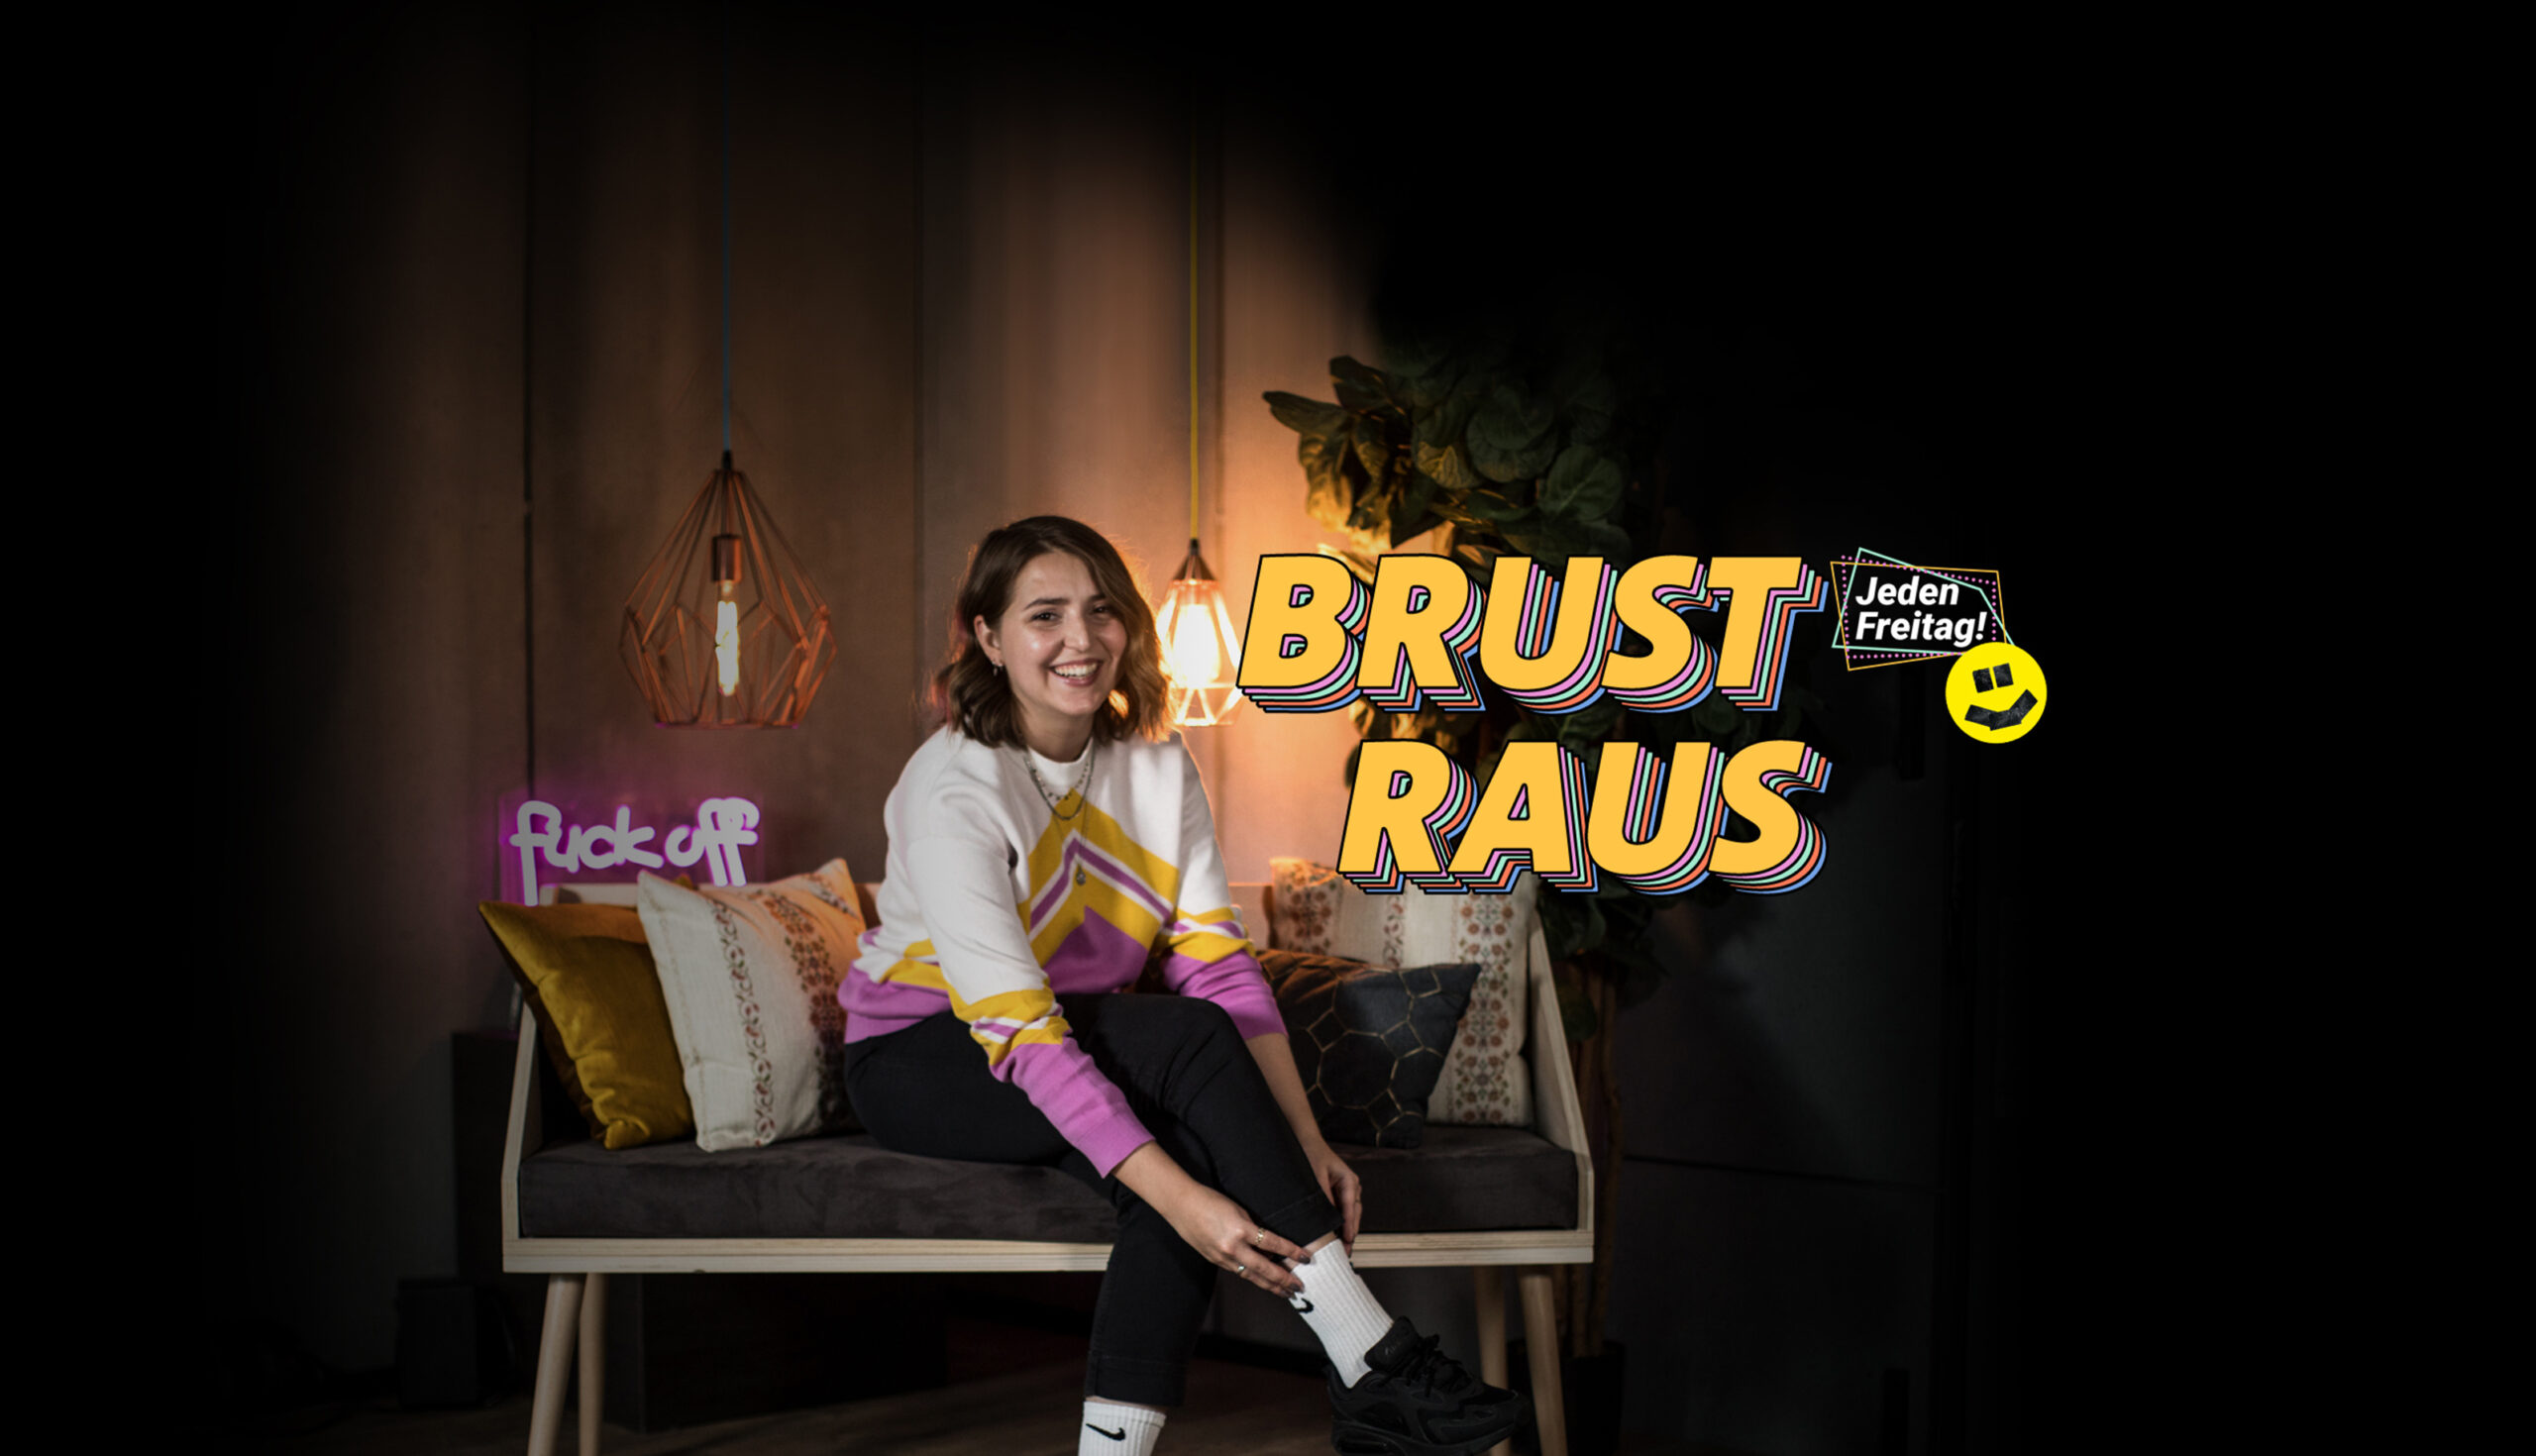 Das Bild zeigt die Moderatorin von "Brust raus", Walerija, und den Slogan des Formats